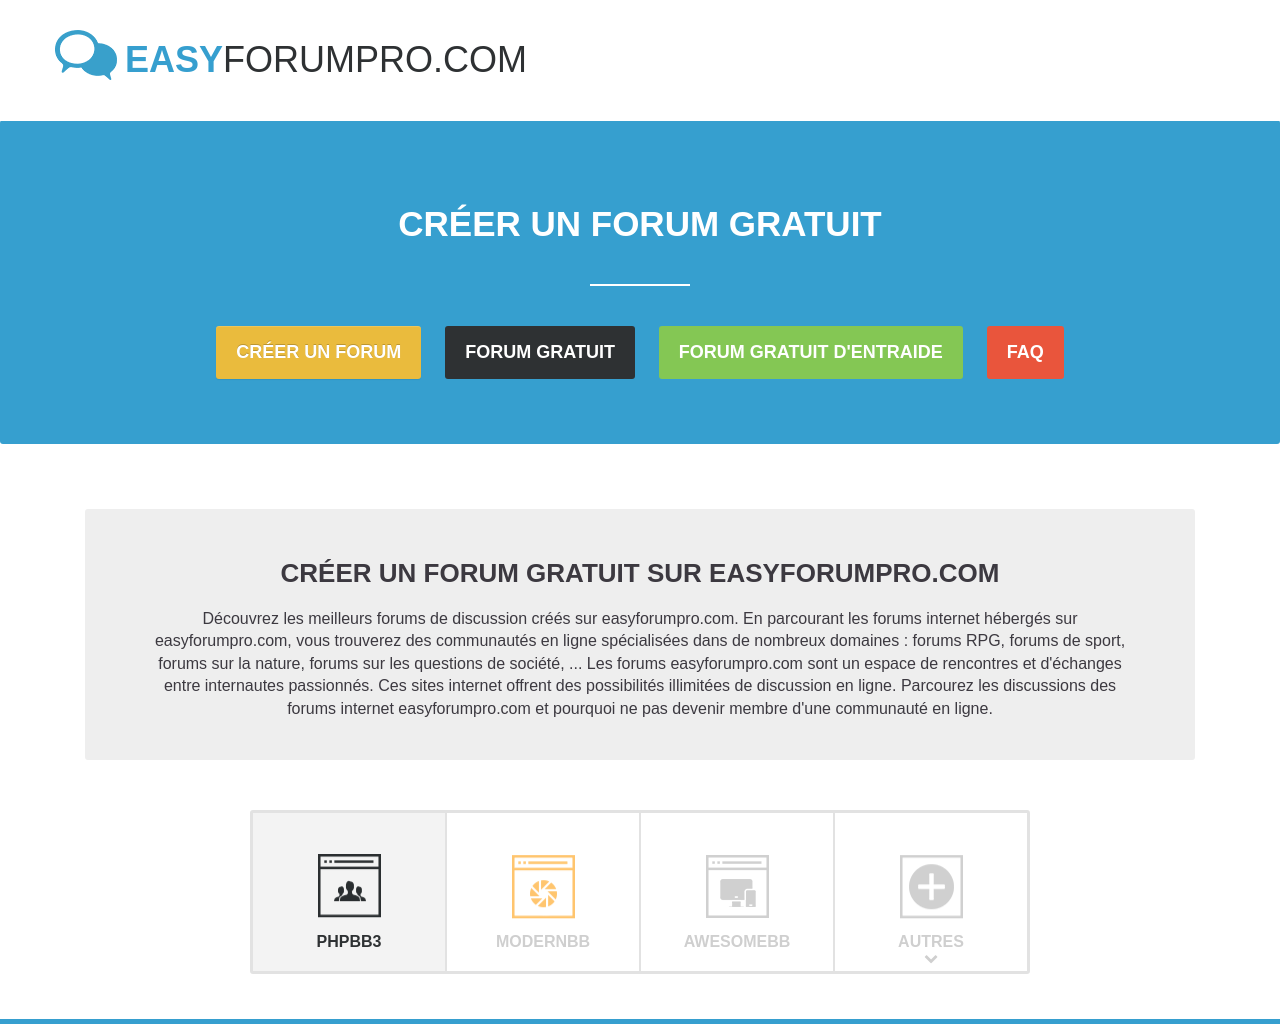 easyforumpro.com